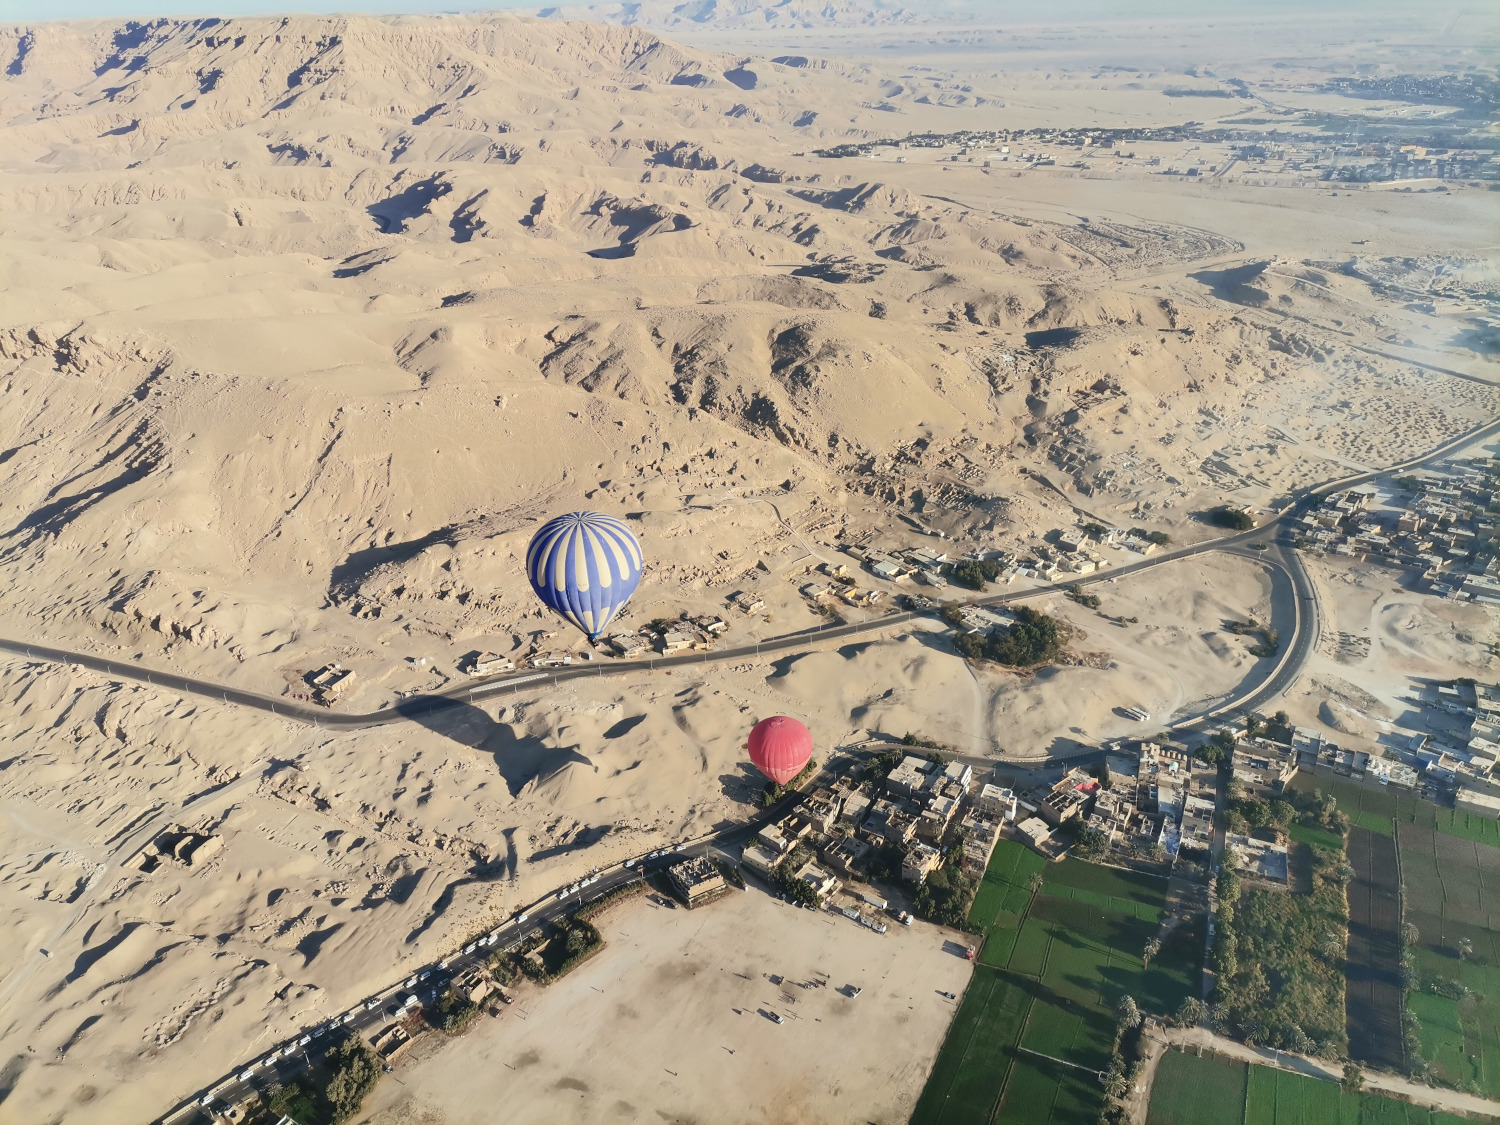 
Hot air balloon rides in Luxor